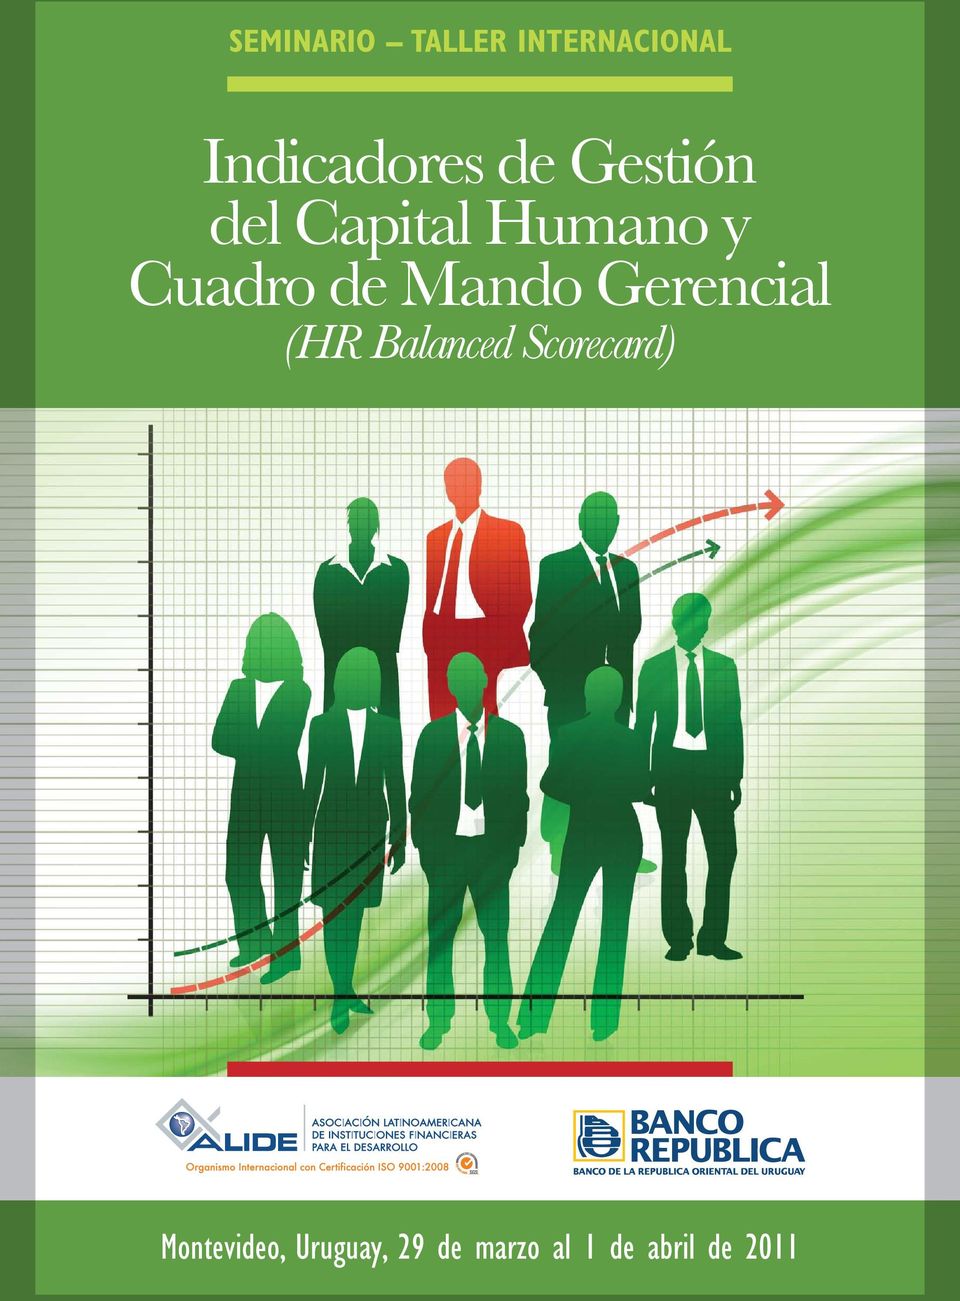 Mando Gerencial (HR Balanced Scorecard)